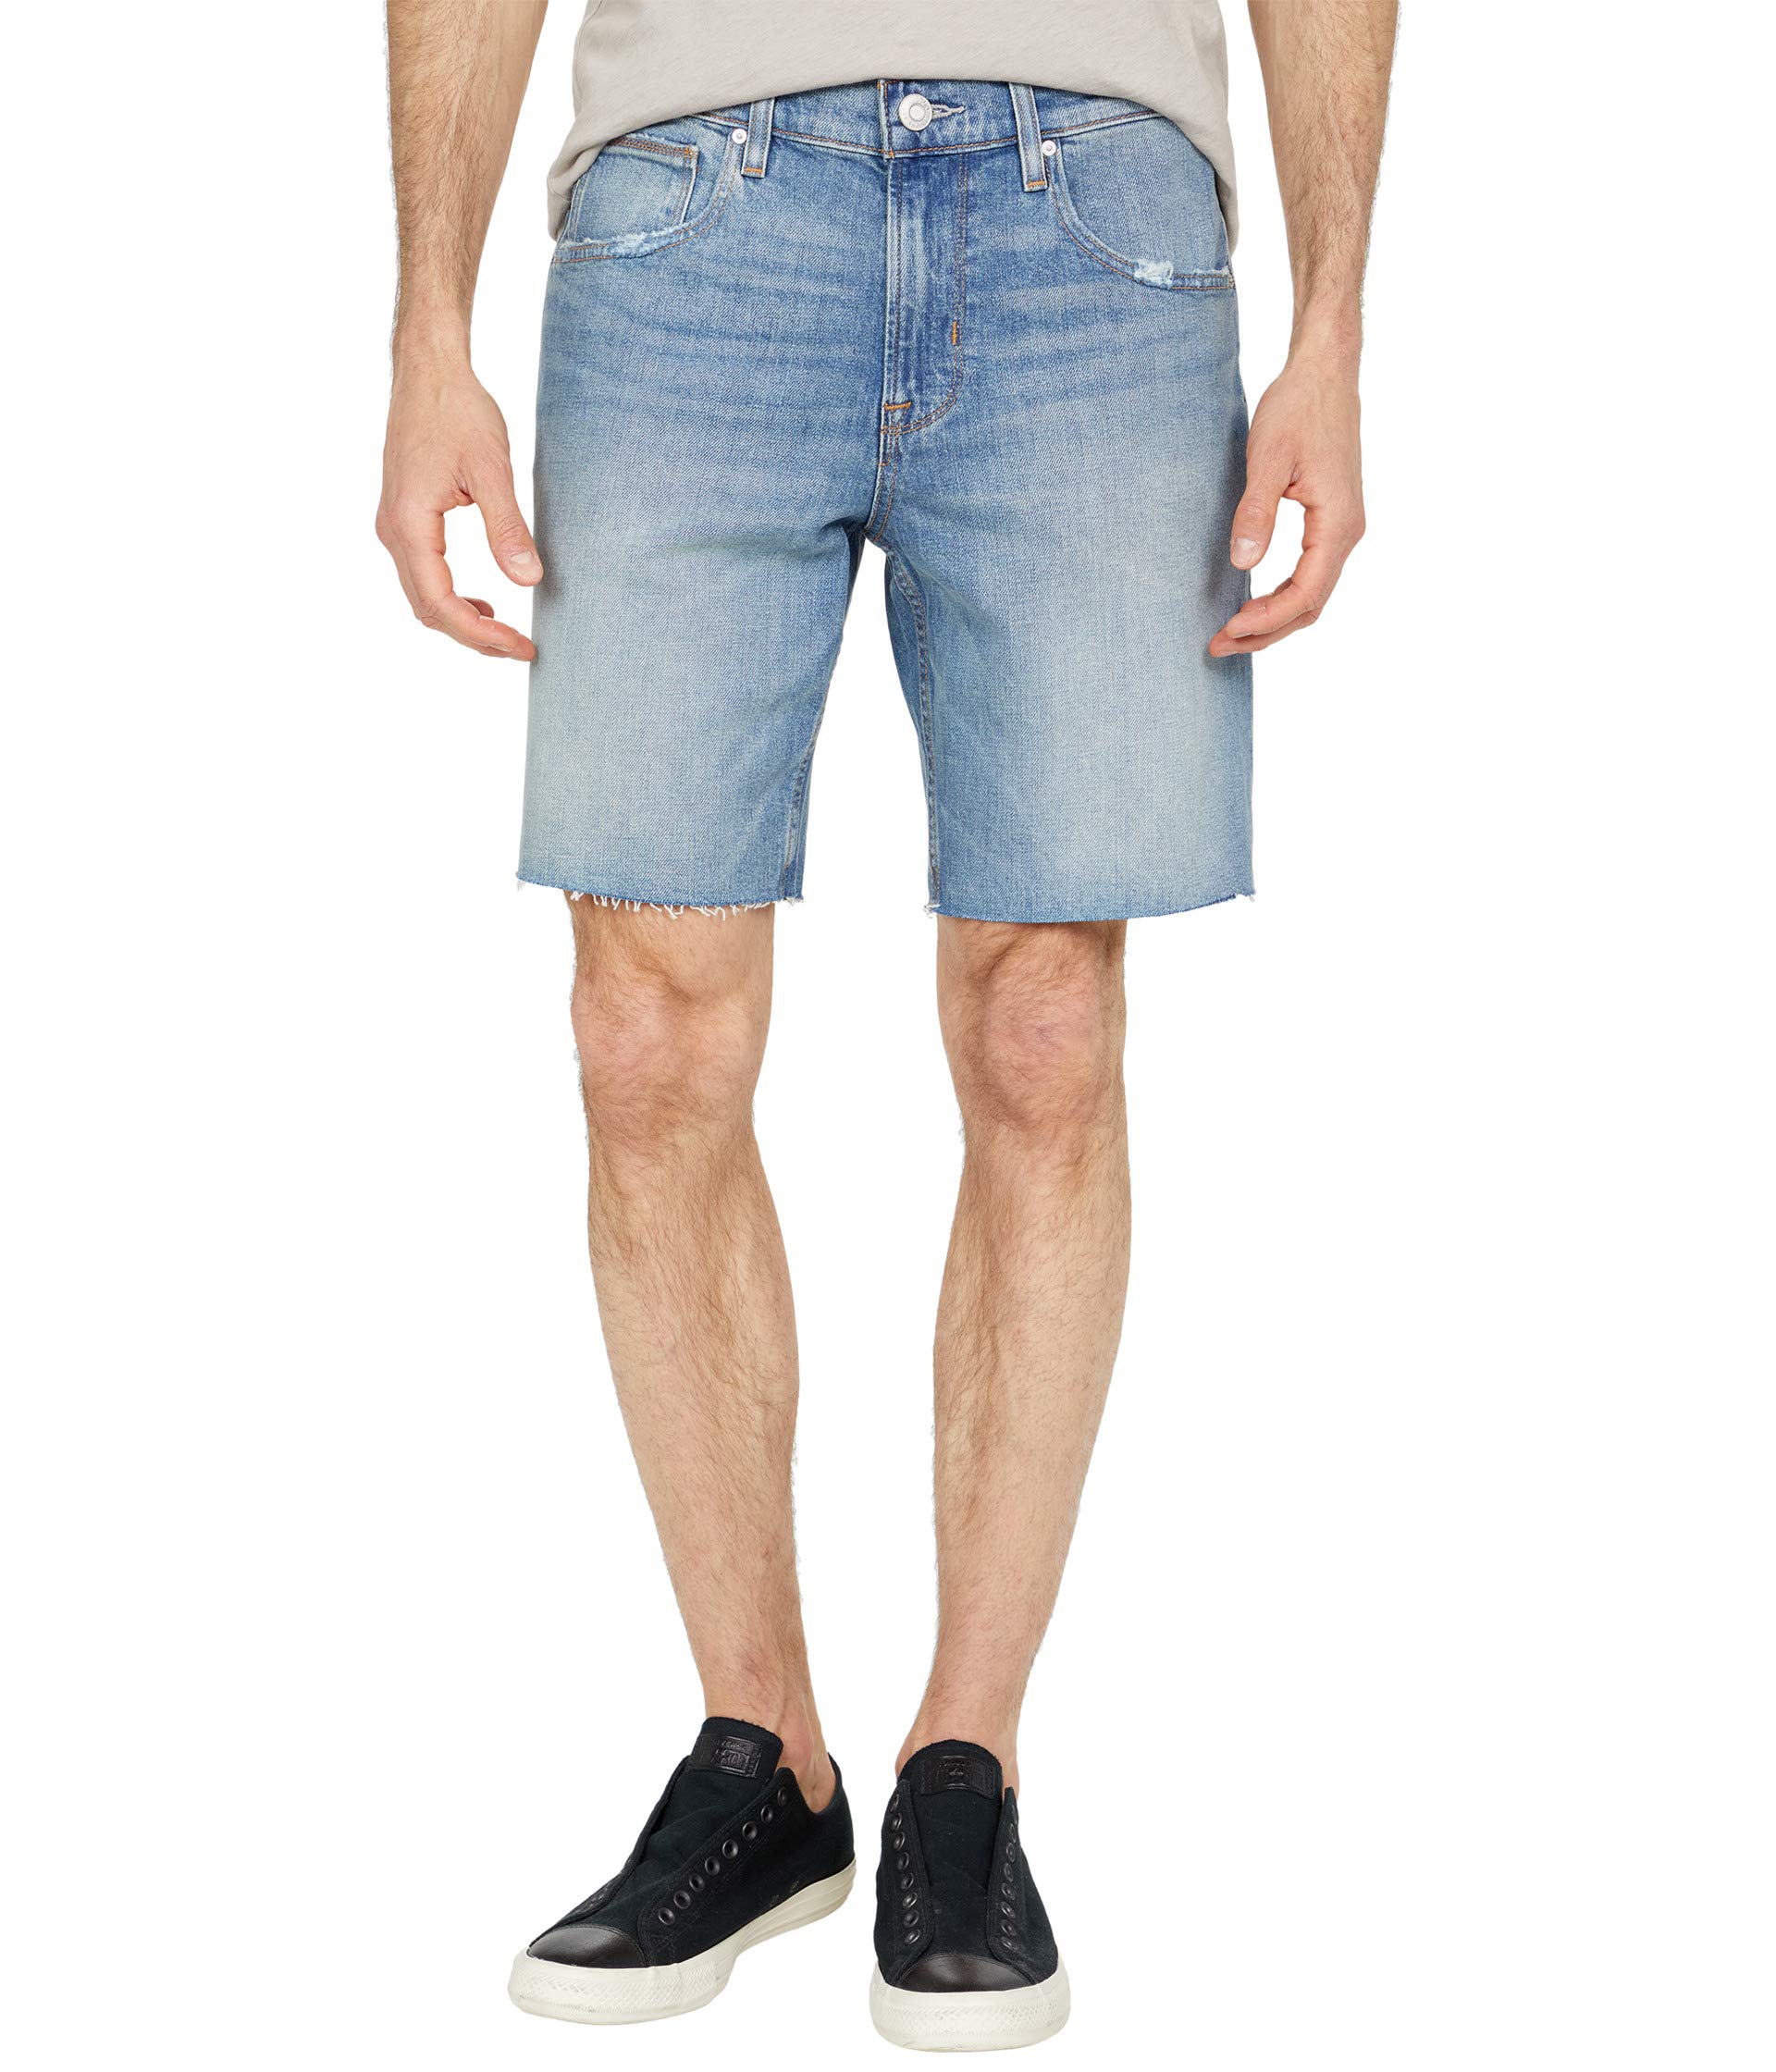 Шорты Hudson Jeans, Kirk Cutoffs Shorts in Campus шорты hudson jeans croxley cuffed shorts in white белый